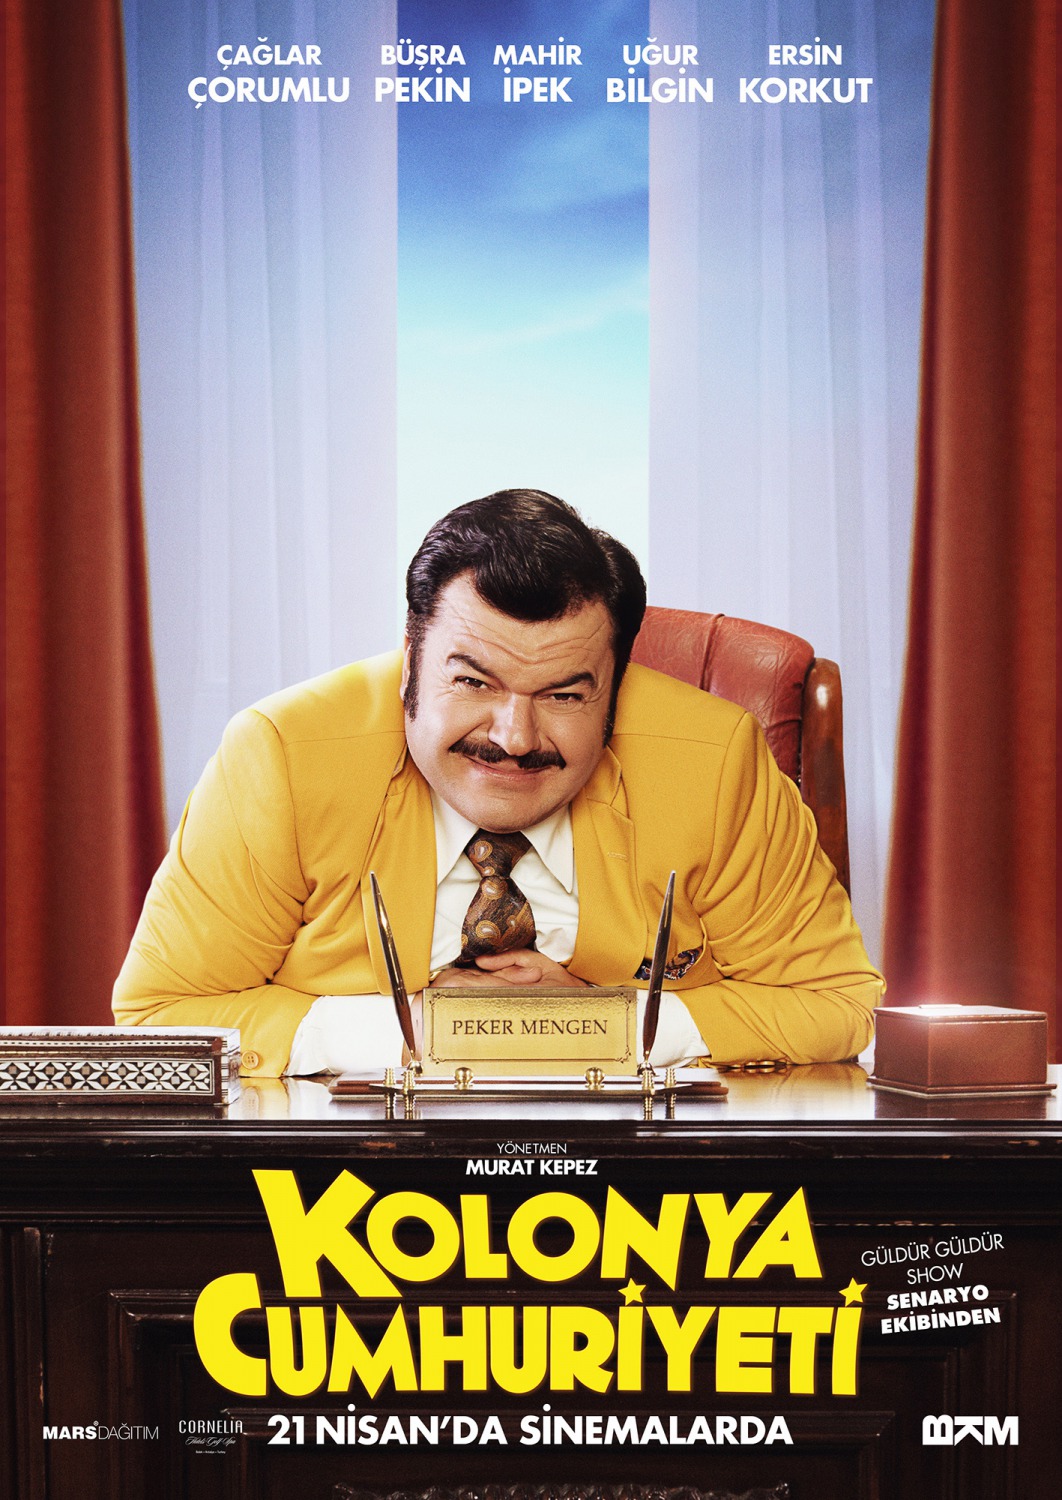 Extra Large Movie Poster Image for Kolonya Cumhuriyeti (#2 of 7)